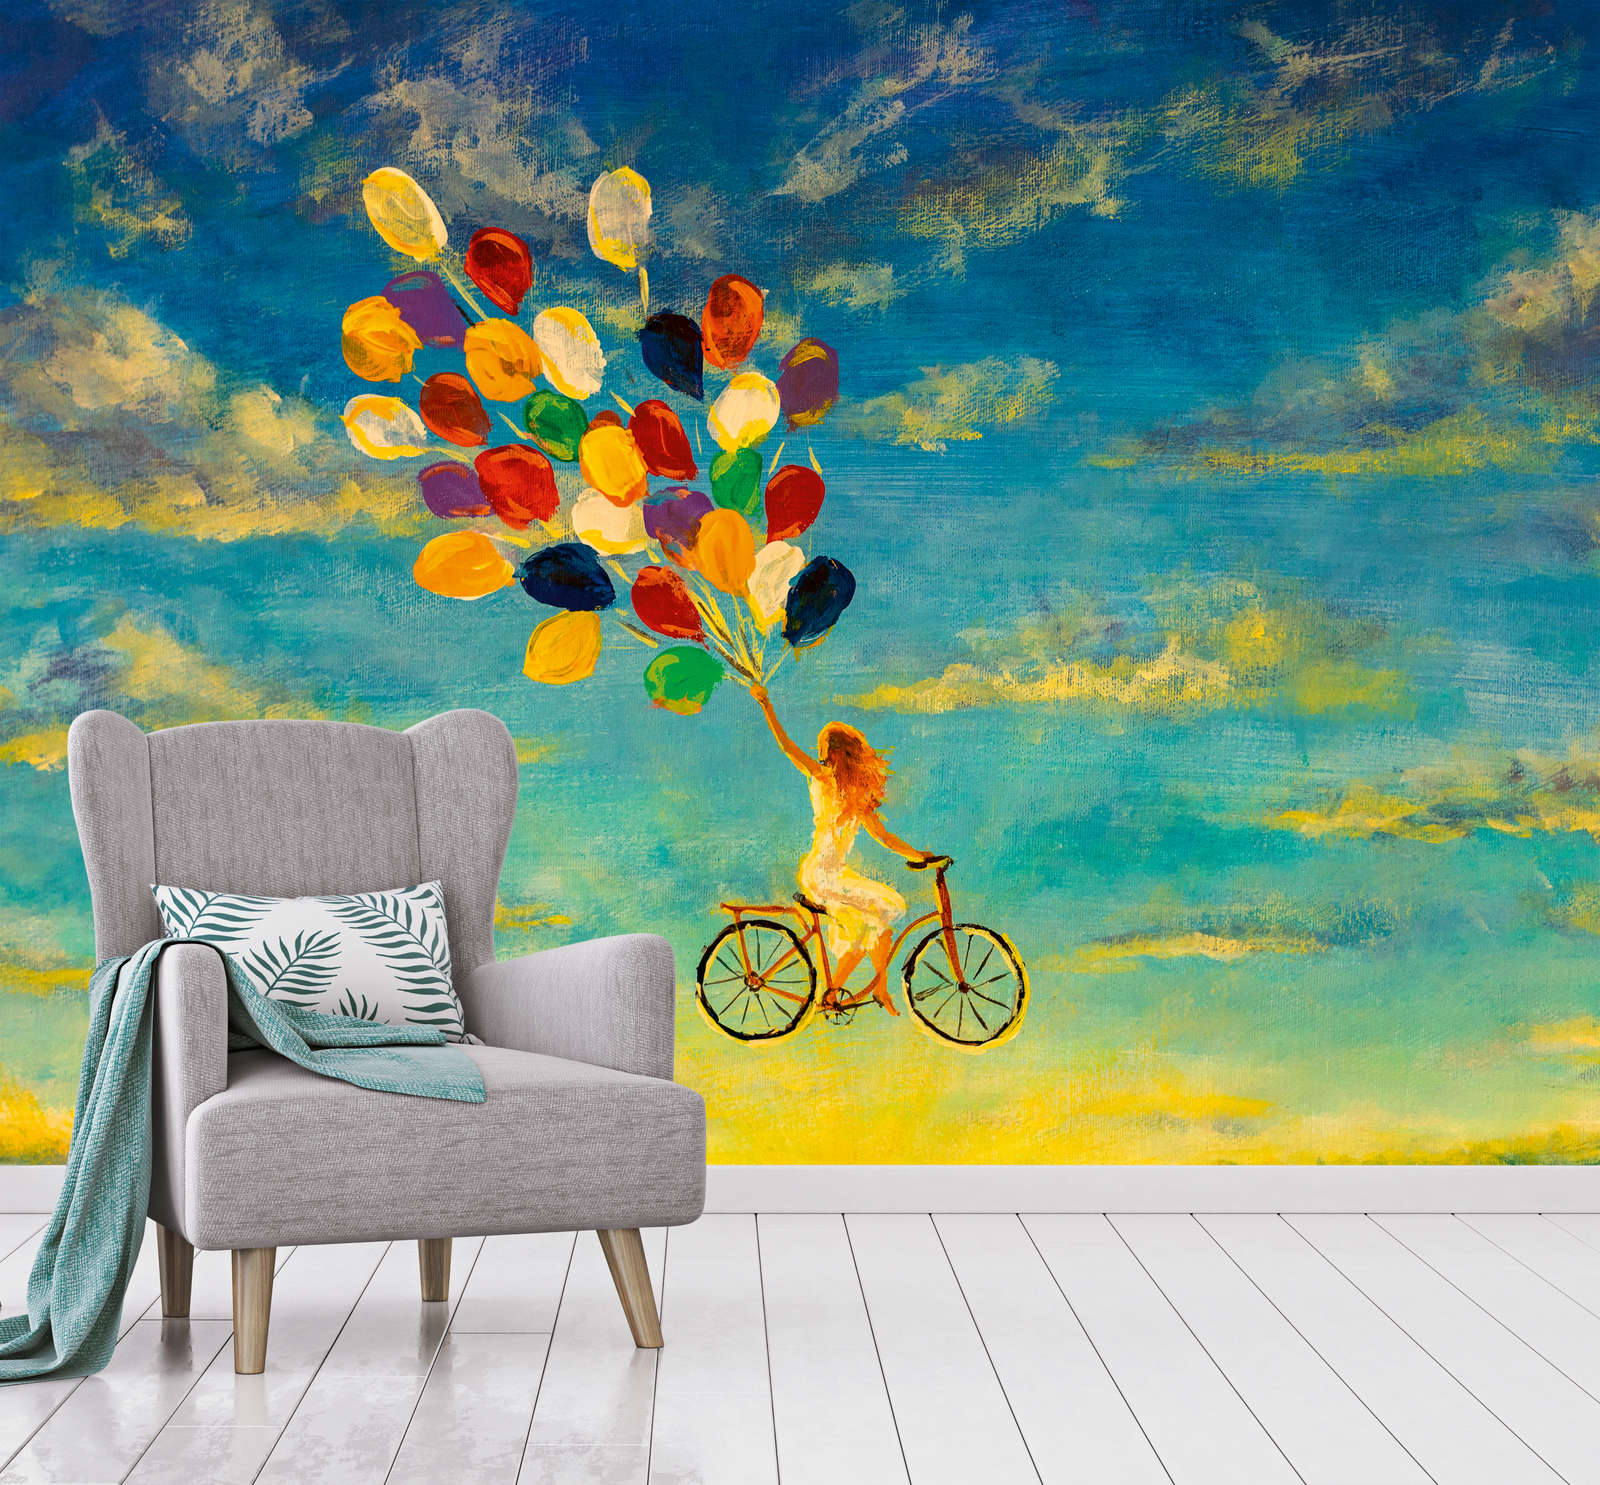             Digital behang met Vrouw op Fiets in de Lucht Schilderij - Blauw, Geel, Bont
        